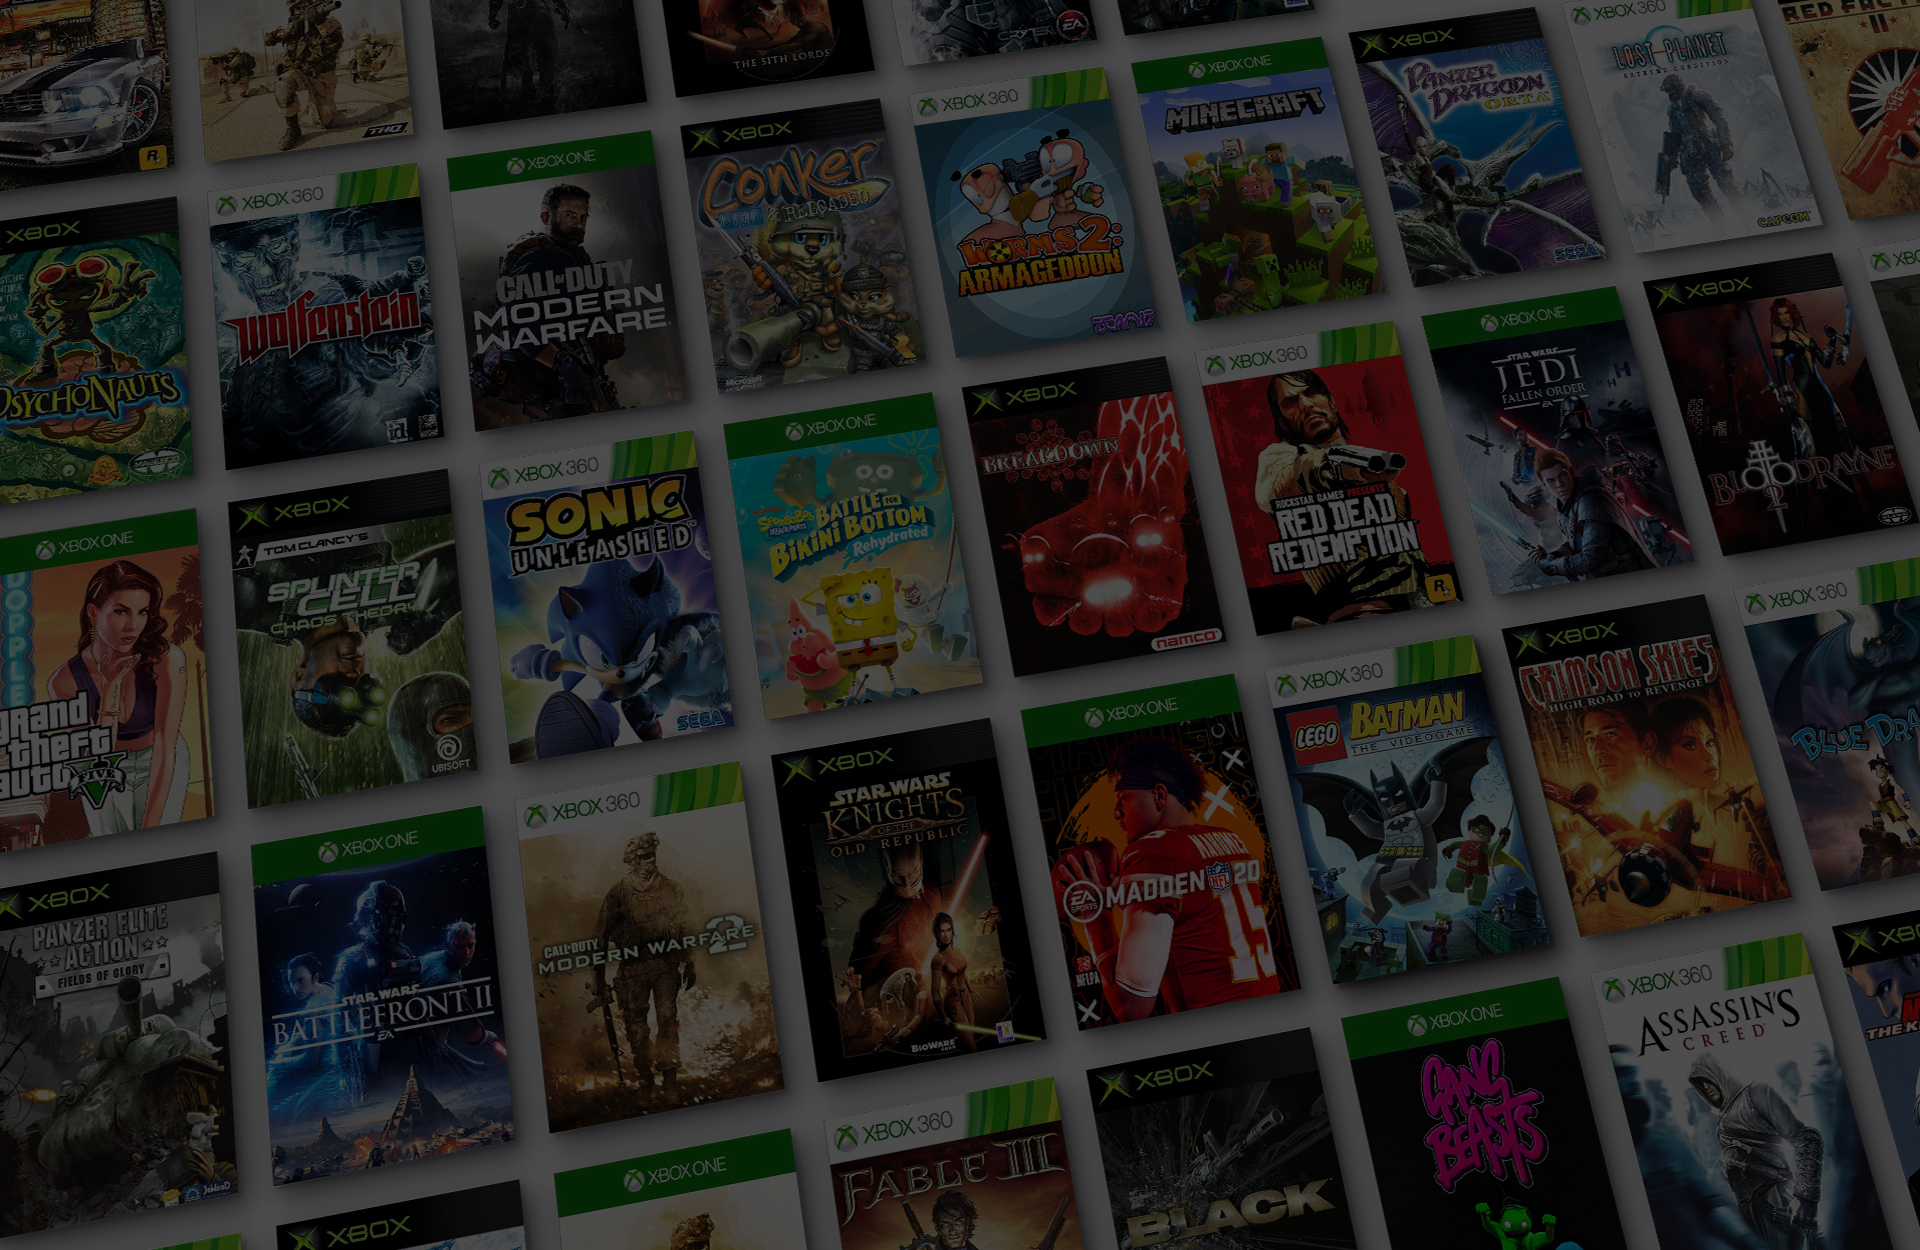 Mosaic of Xbox backward compatible game titles